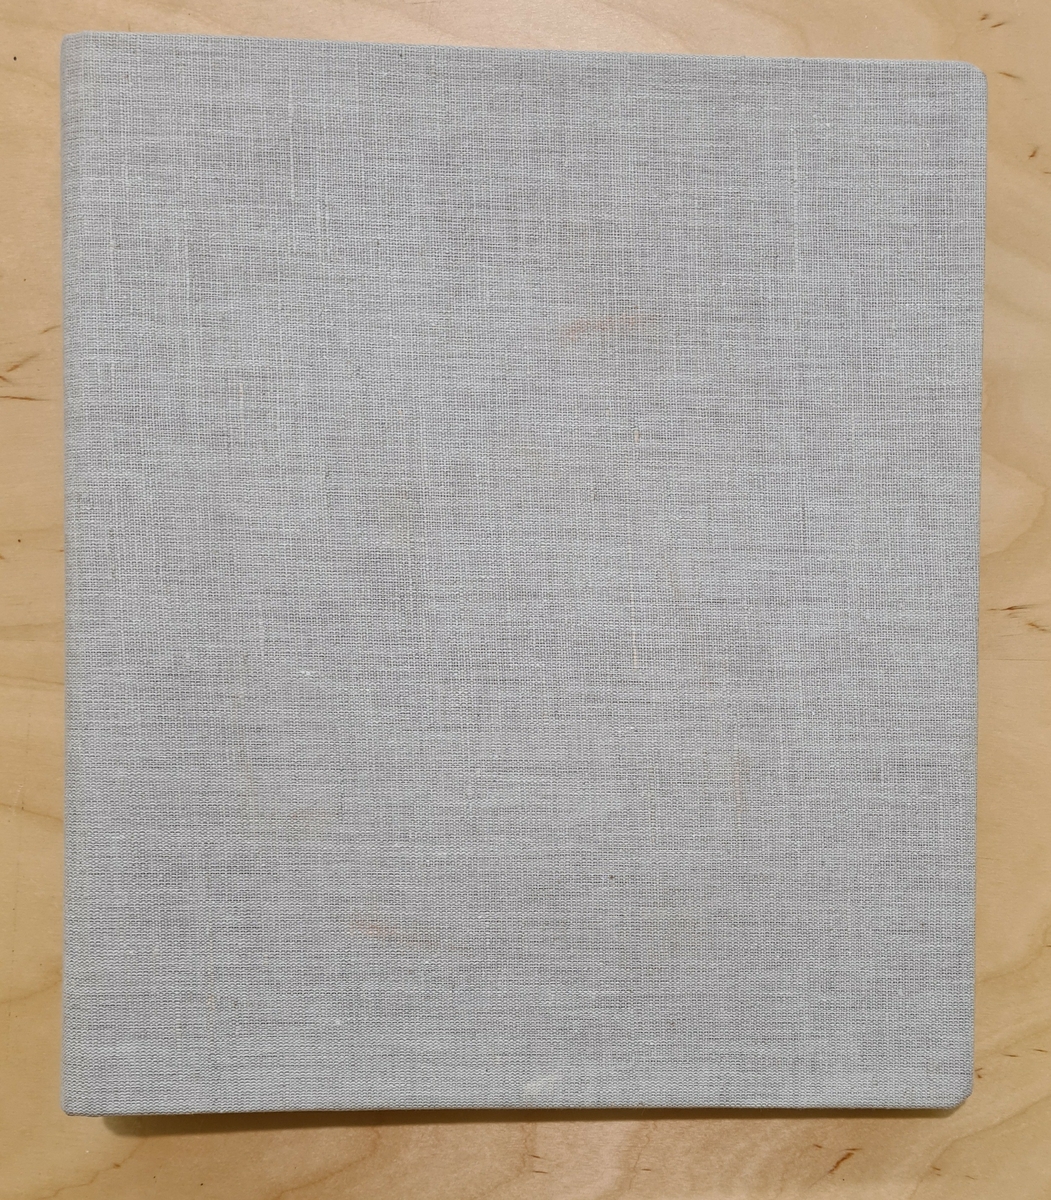 VM29655:6 Spinningskurshäfte.
En ringpärm med spinningskursanteckningar från Johanna Brunssons vävskola. Pärmen har senare klätts med grå textilie.

En samling vävböcker. Böckerna innehåller vävlära, mönster, teckningar samt vävprover.